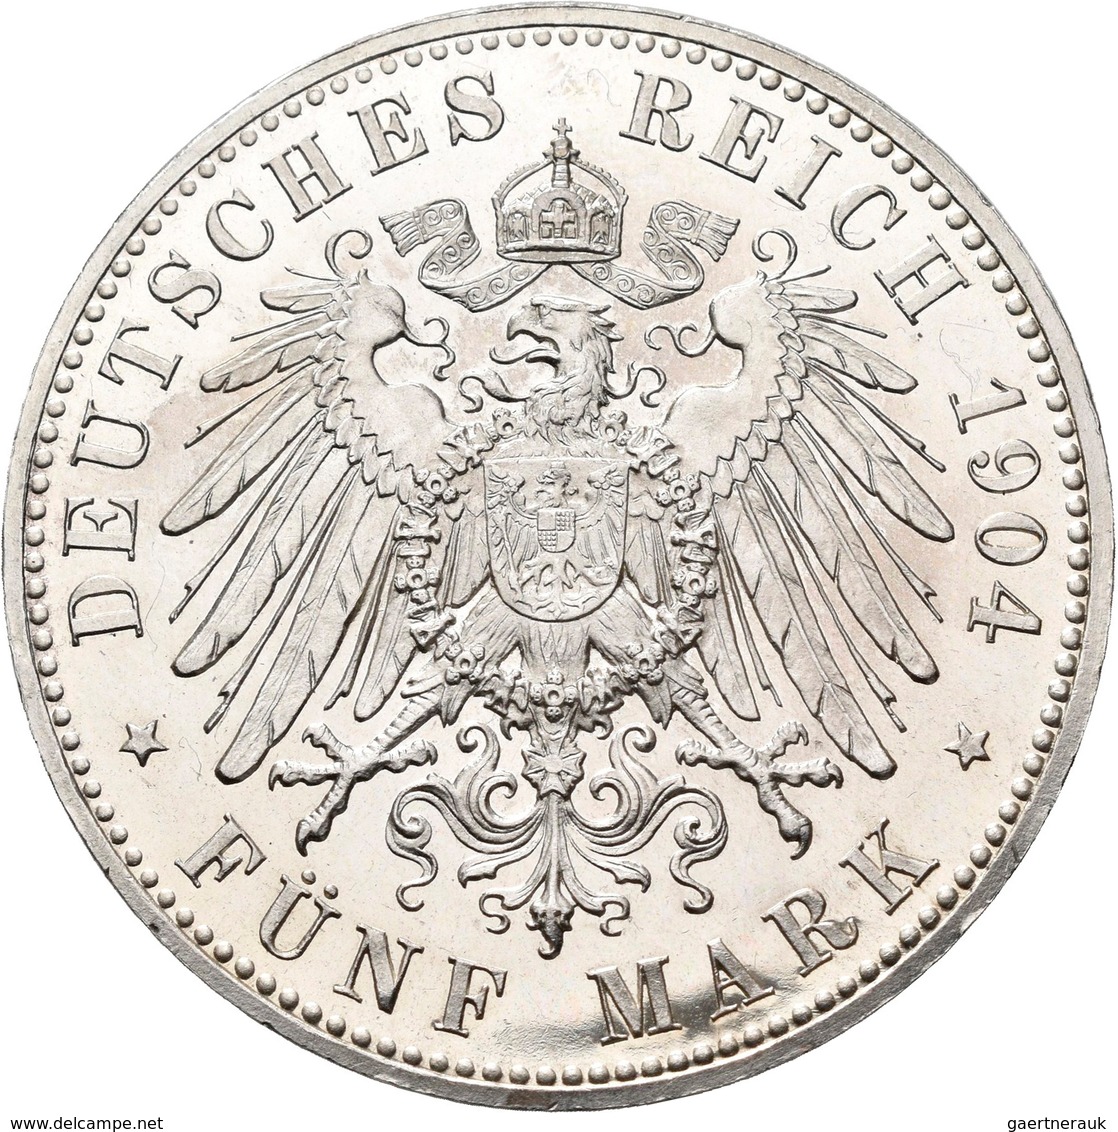 Mecklenburg-Schwerin: Friedrich Franz IV. 1901-1918: 5 Mark 1904 A, Zur Hochzeit Mit Alexandra, Jaeg - Taler Et Doppeltaler